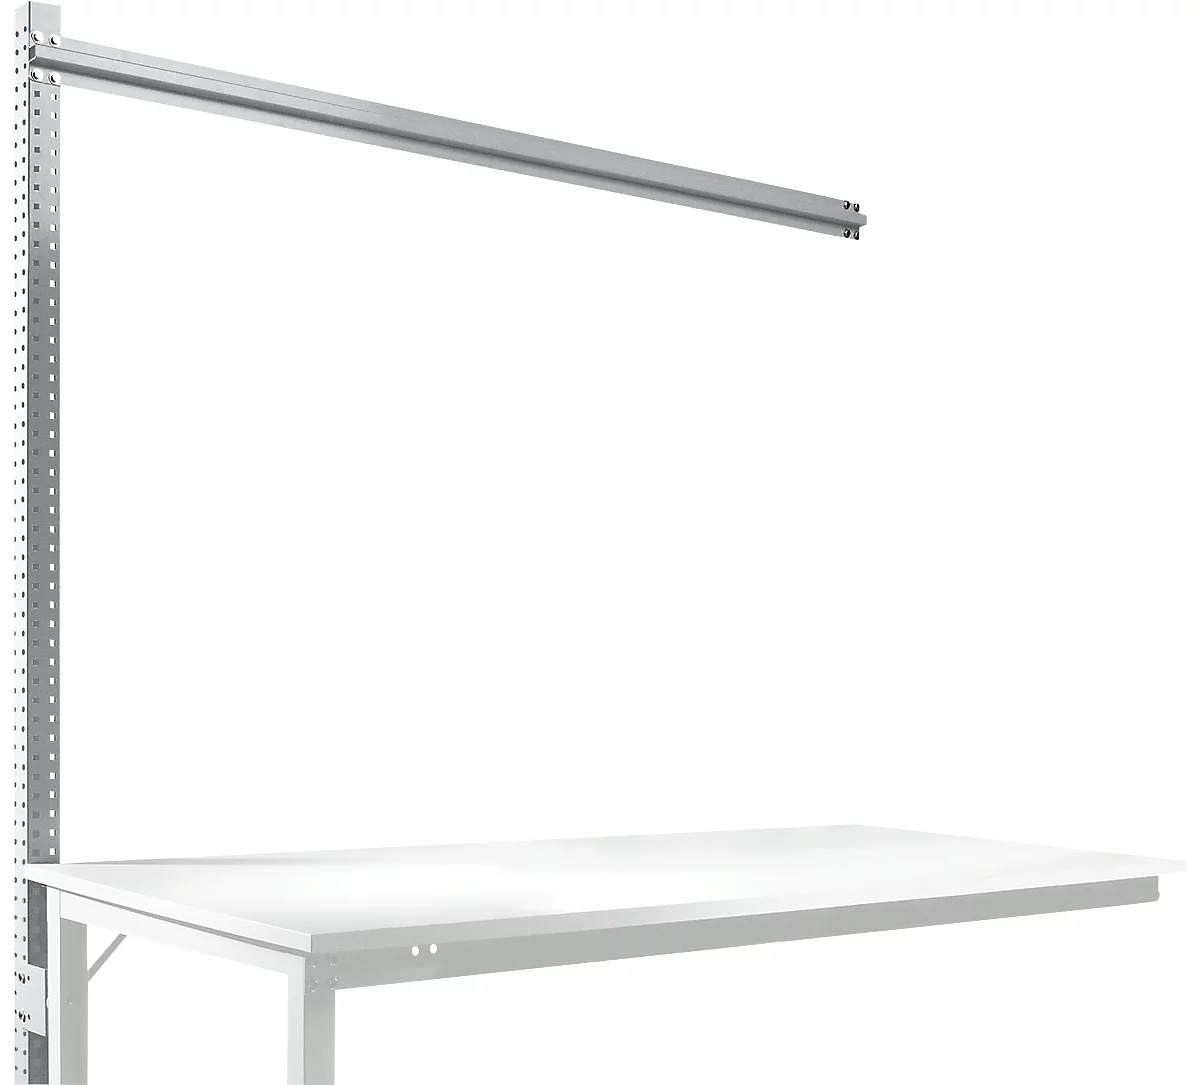 Estructura pórtica adicional para mesa de extensión STANDARD sistema mesa de trabajo/banco de trabajo UNIVERSAL/PROFI, 1750 mm, aluminio plateado